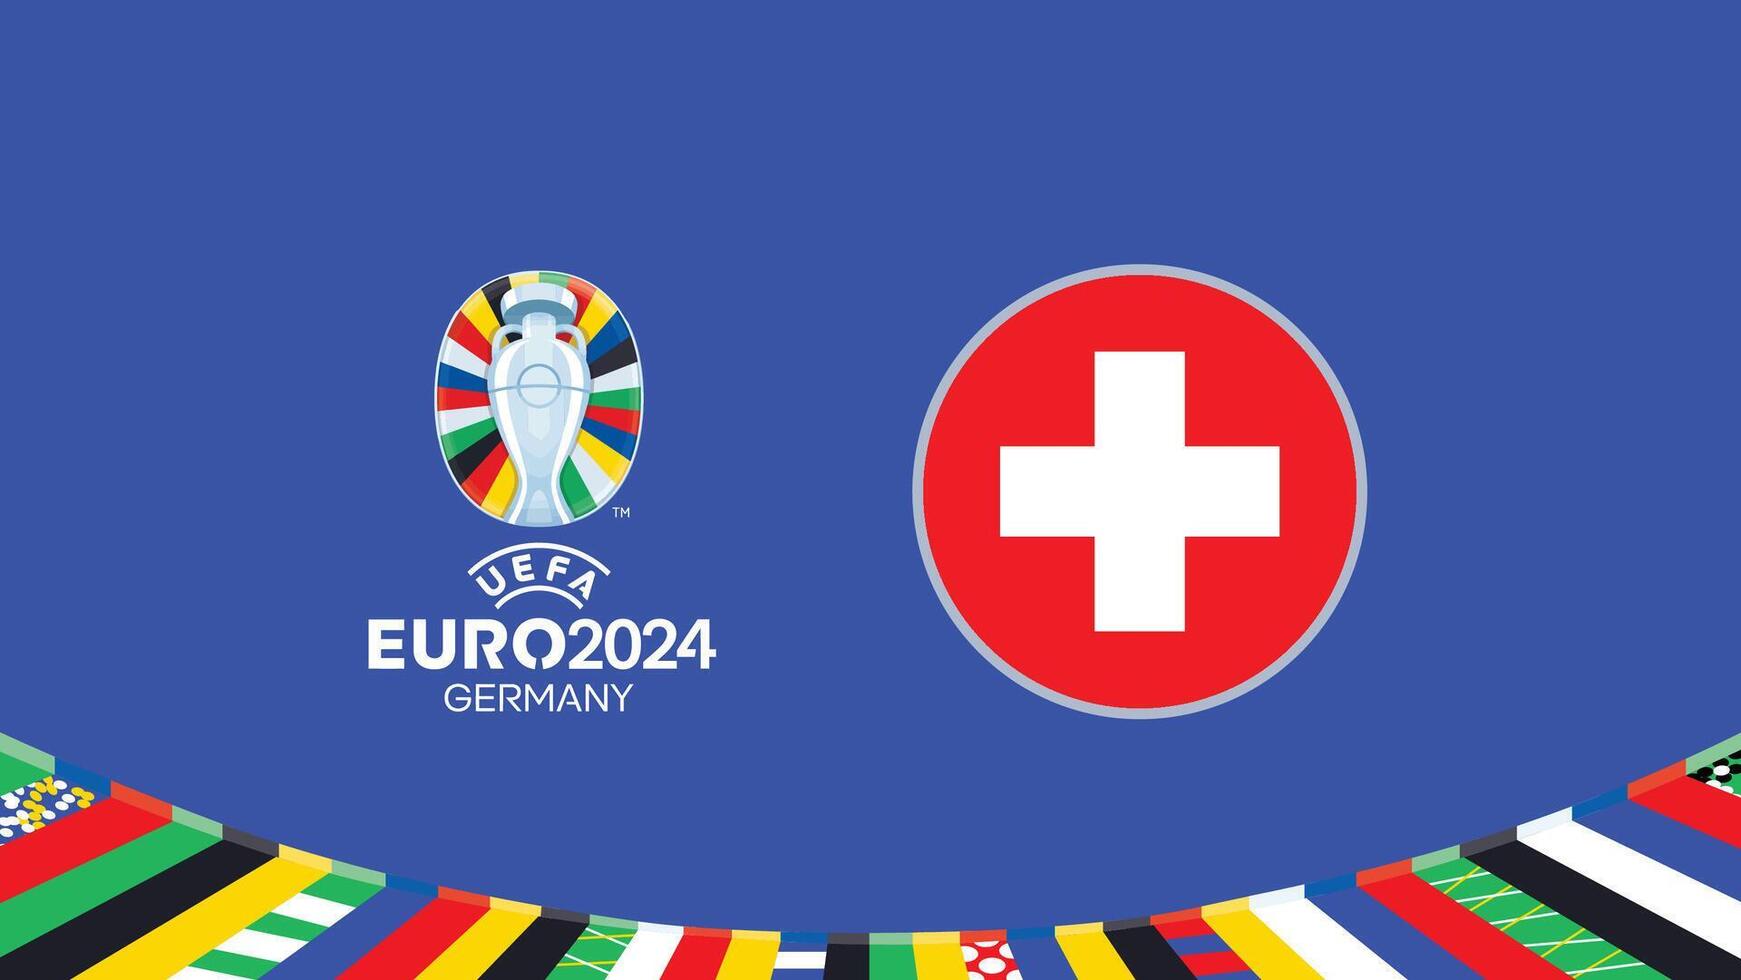 euro 2024 Alemanha Suíça bandeira equipes Projeto com oficial símbolo logotipo abstrato países europeu futebol ilustração vetor